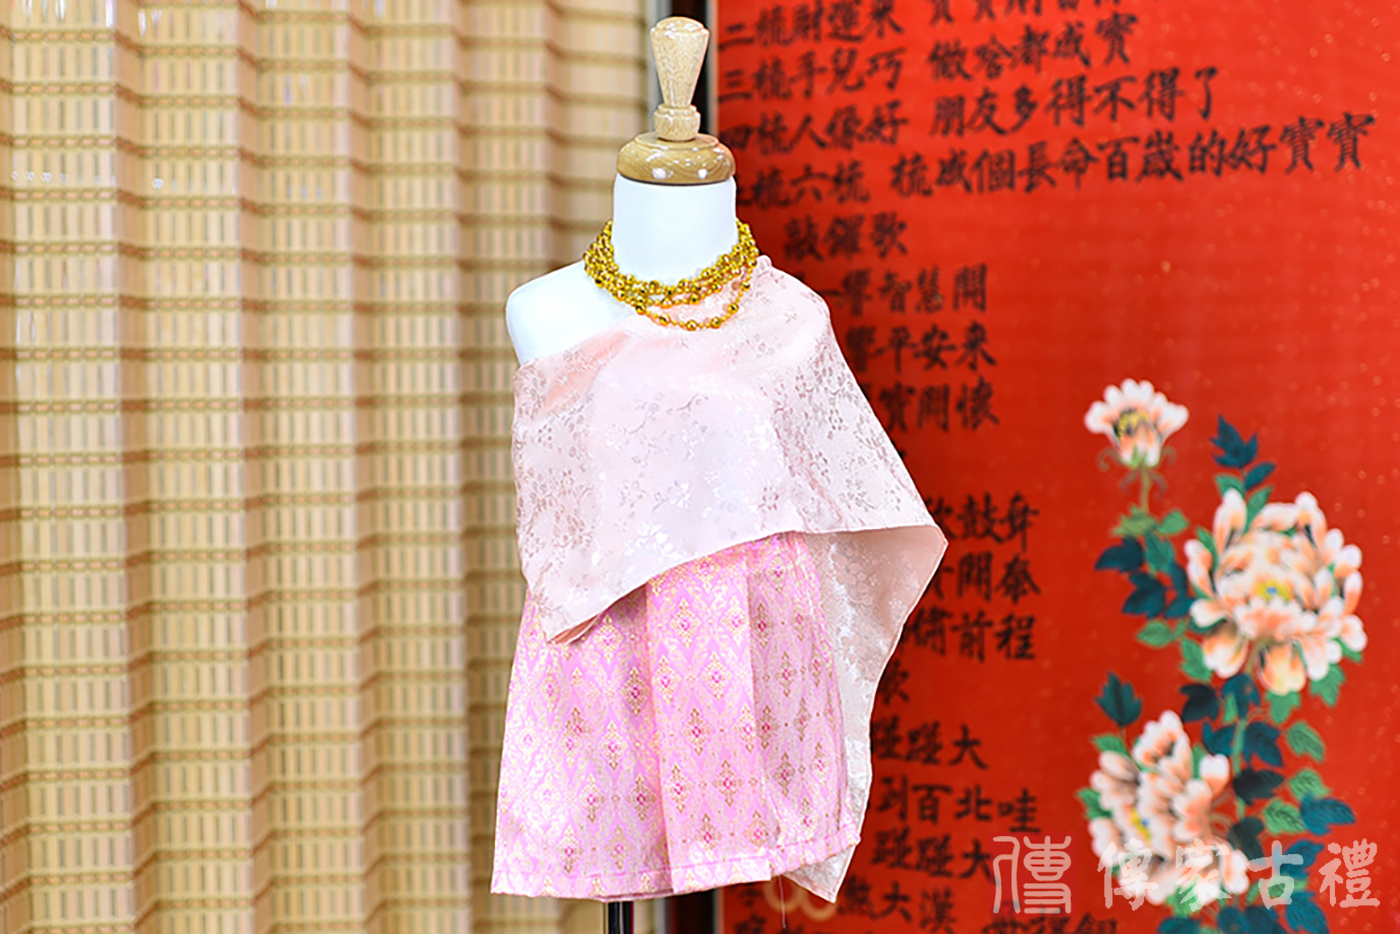 2024-02-22小孩皇室泰服古裝禮服照。粉色蕾絲披肩搭配細緻金色圖案的繞身裙的泰式古裝禮服。照片集